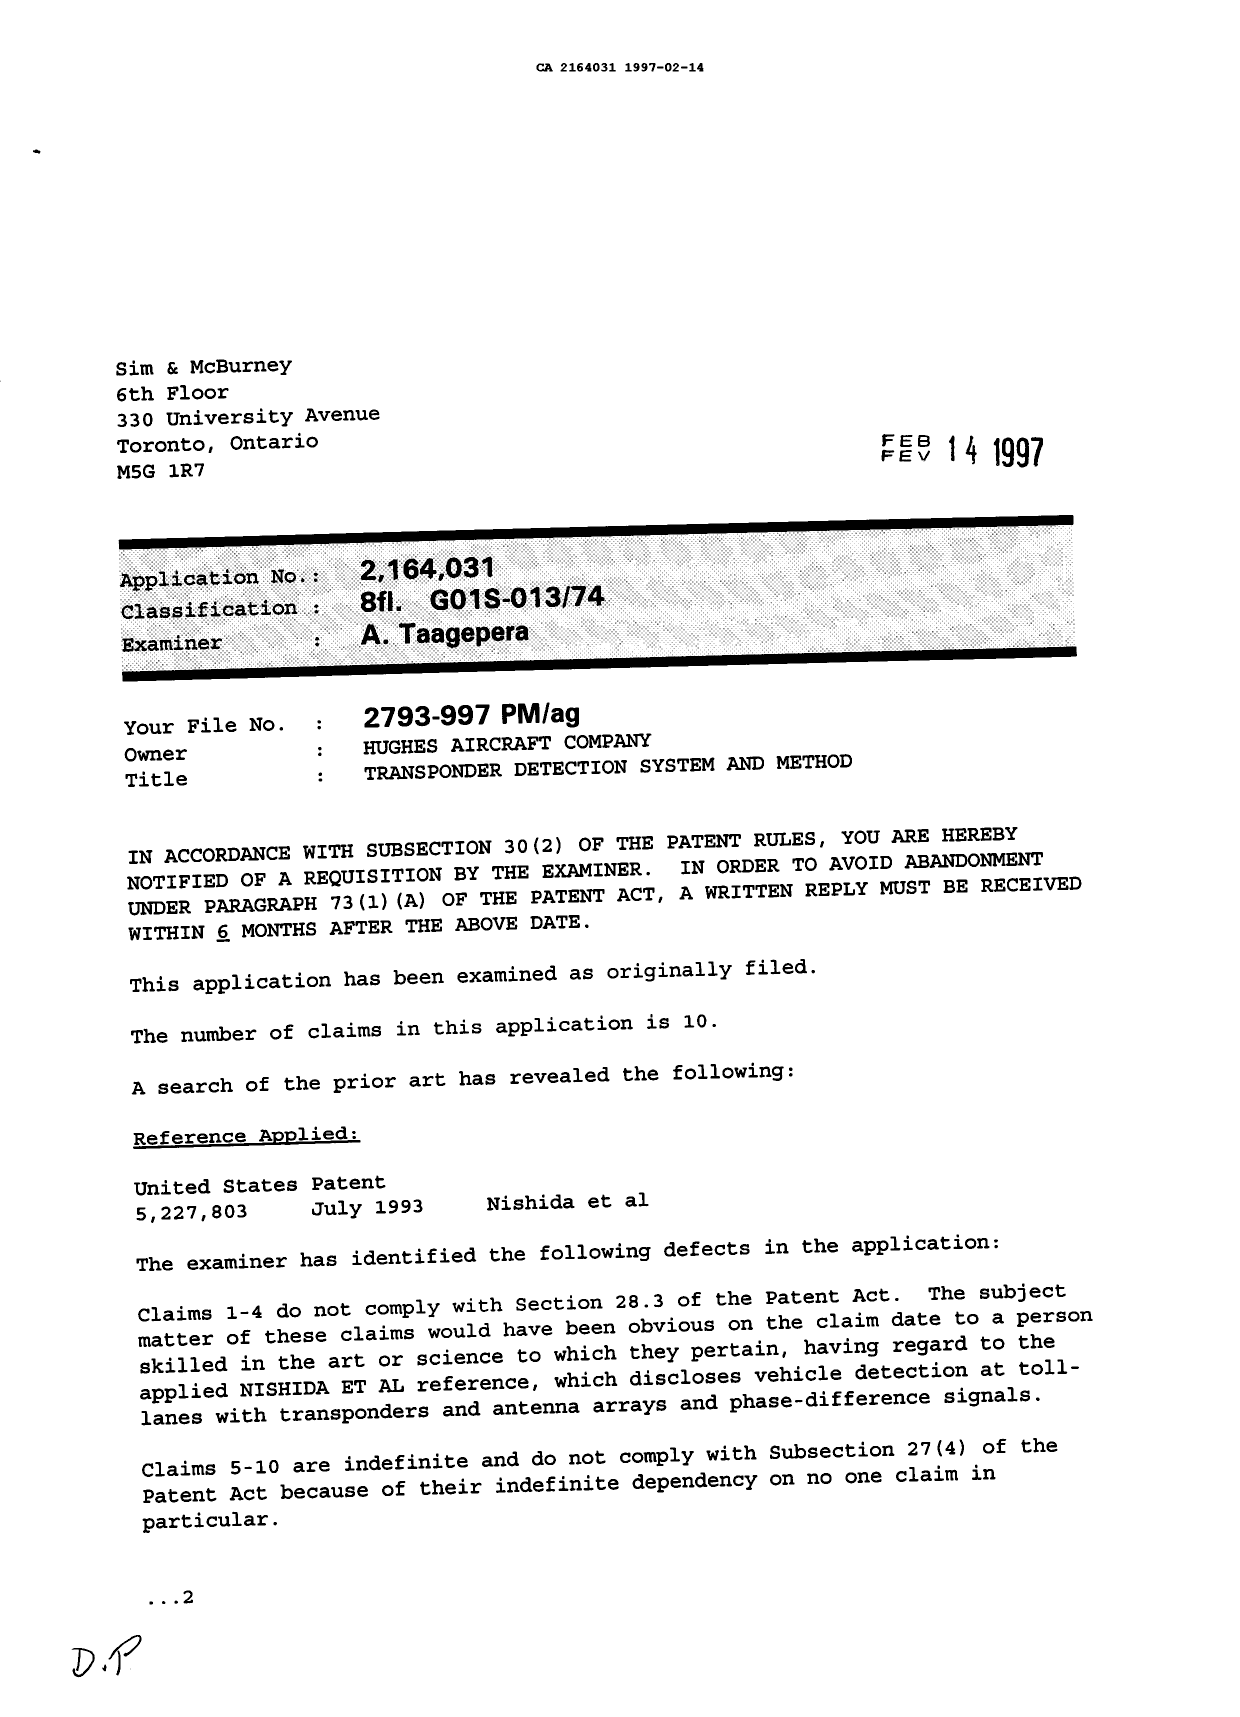 Document de brevet canadien 2164031. Demande d'examen 19970214. Image 1 de 2